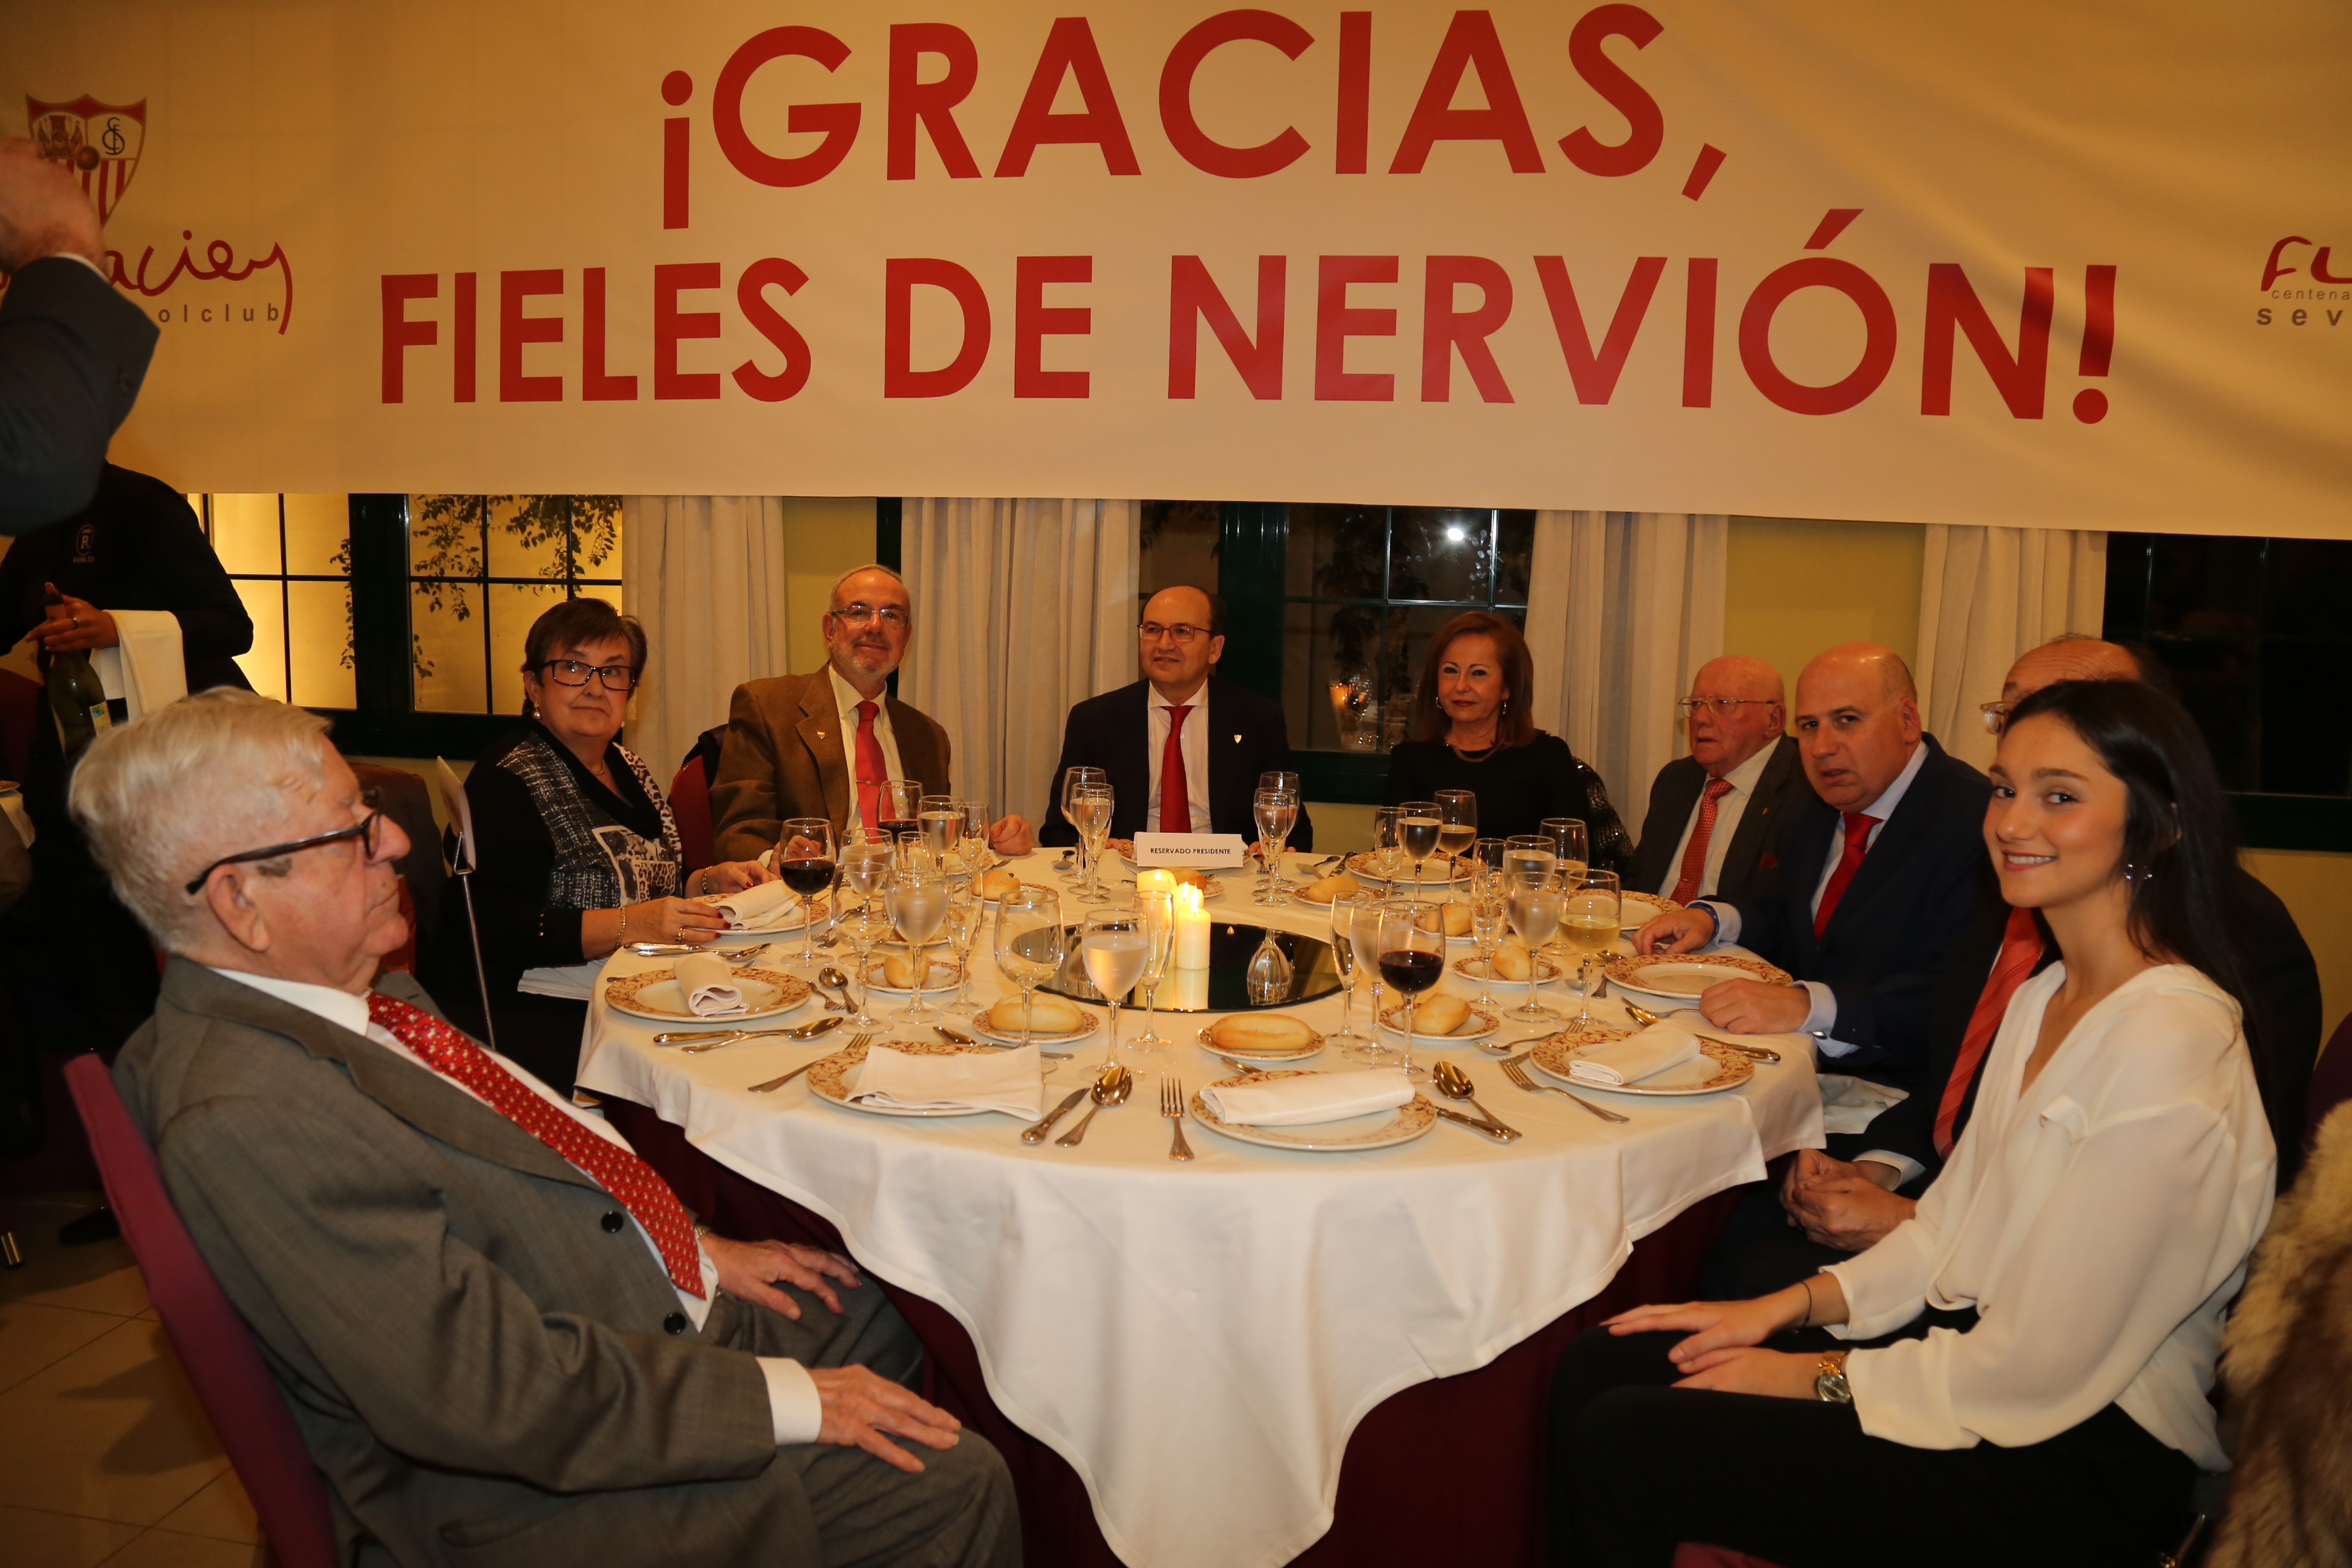 Castro cena con los Fieles de Nervión en Robles